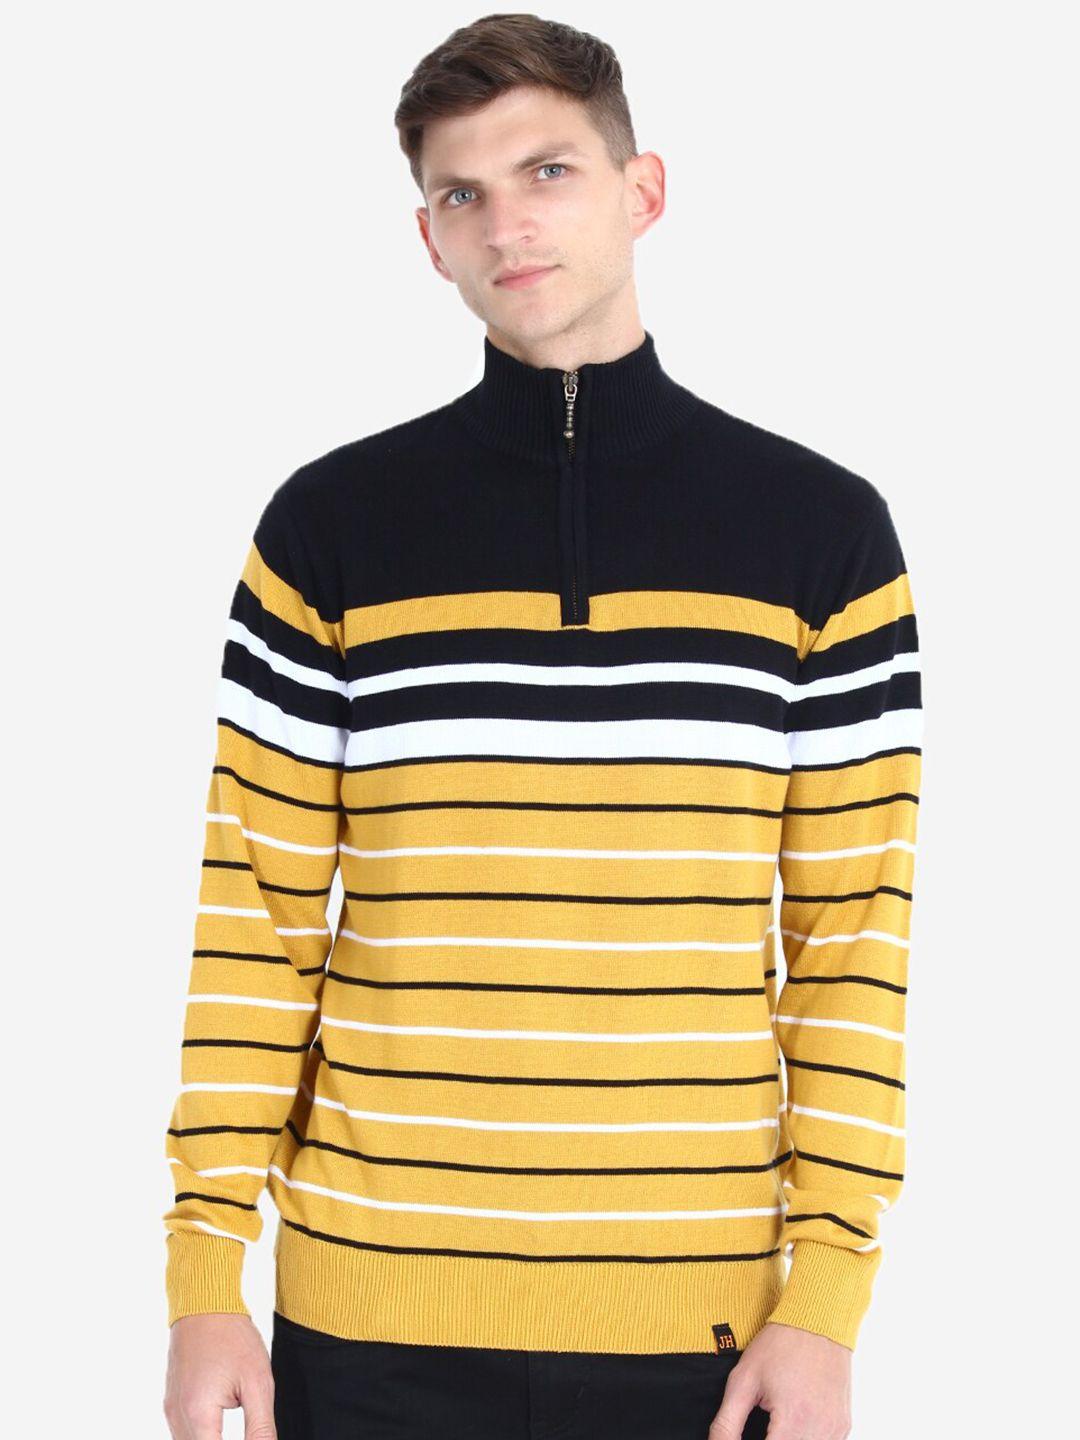 joe hazel men striped cotton pullover